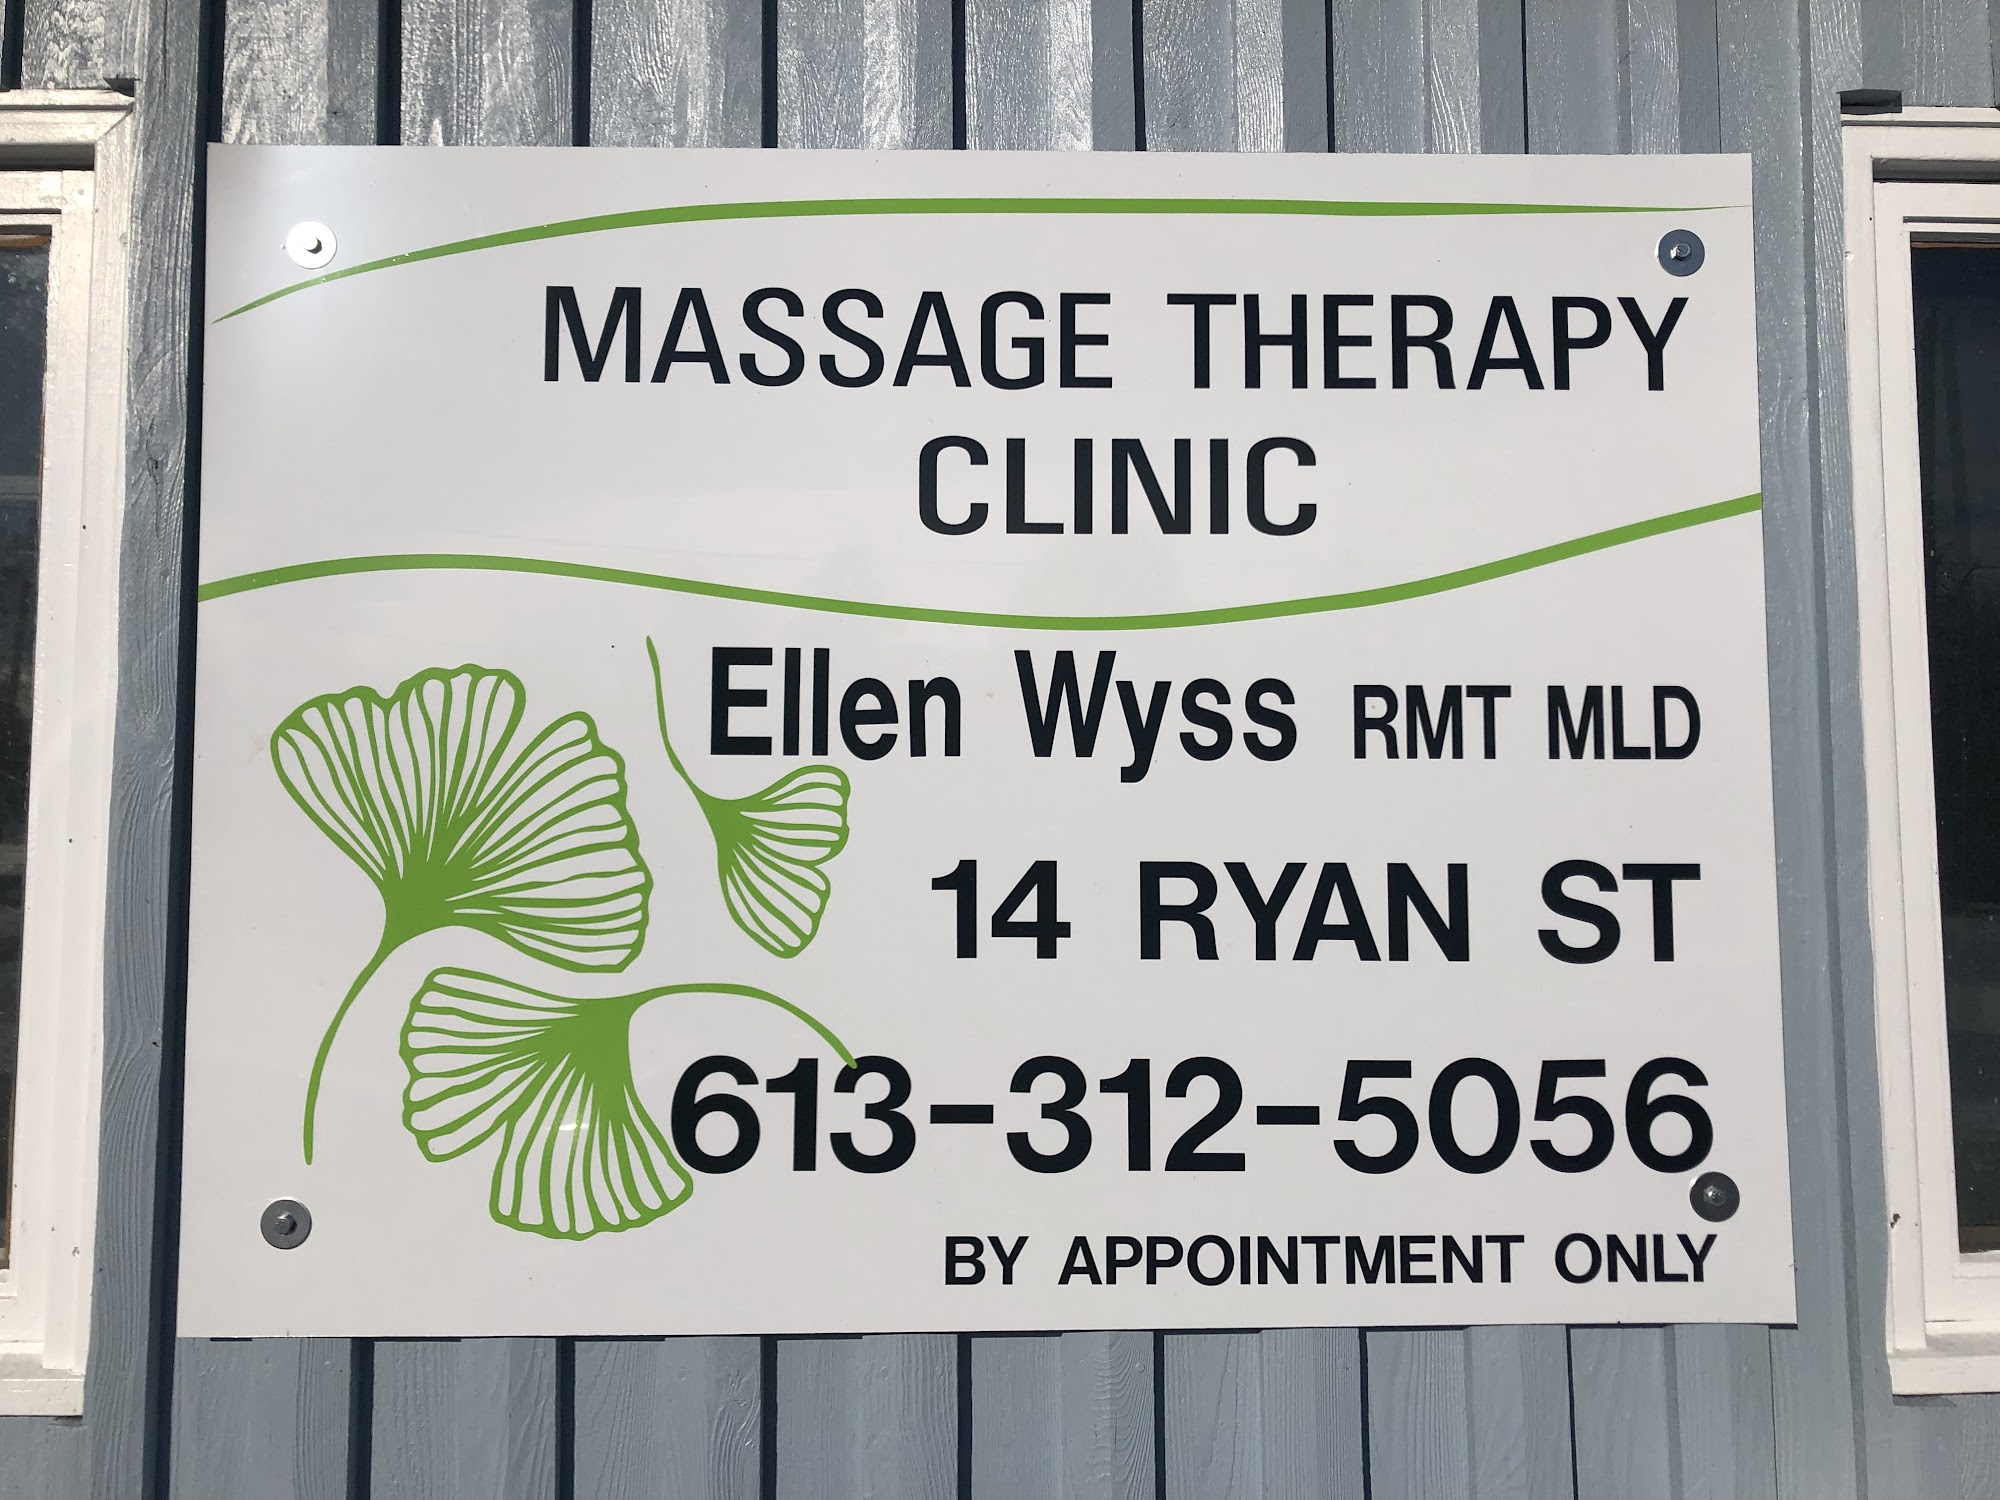 Ellen Wyss RMT 14 Ryan St, Killaloe Ontario K0J 2A0